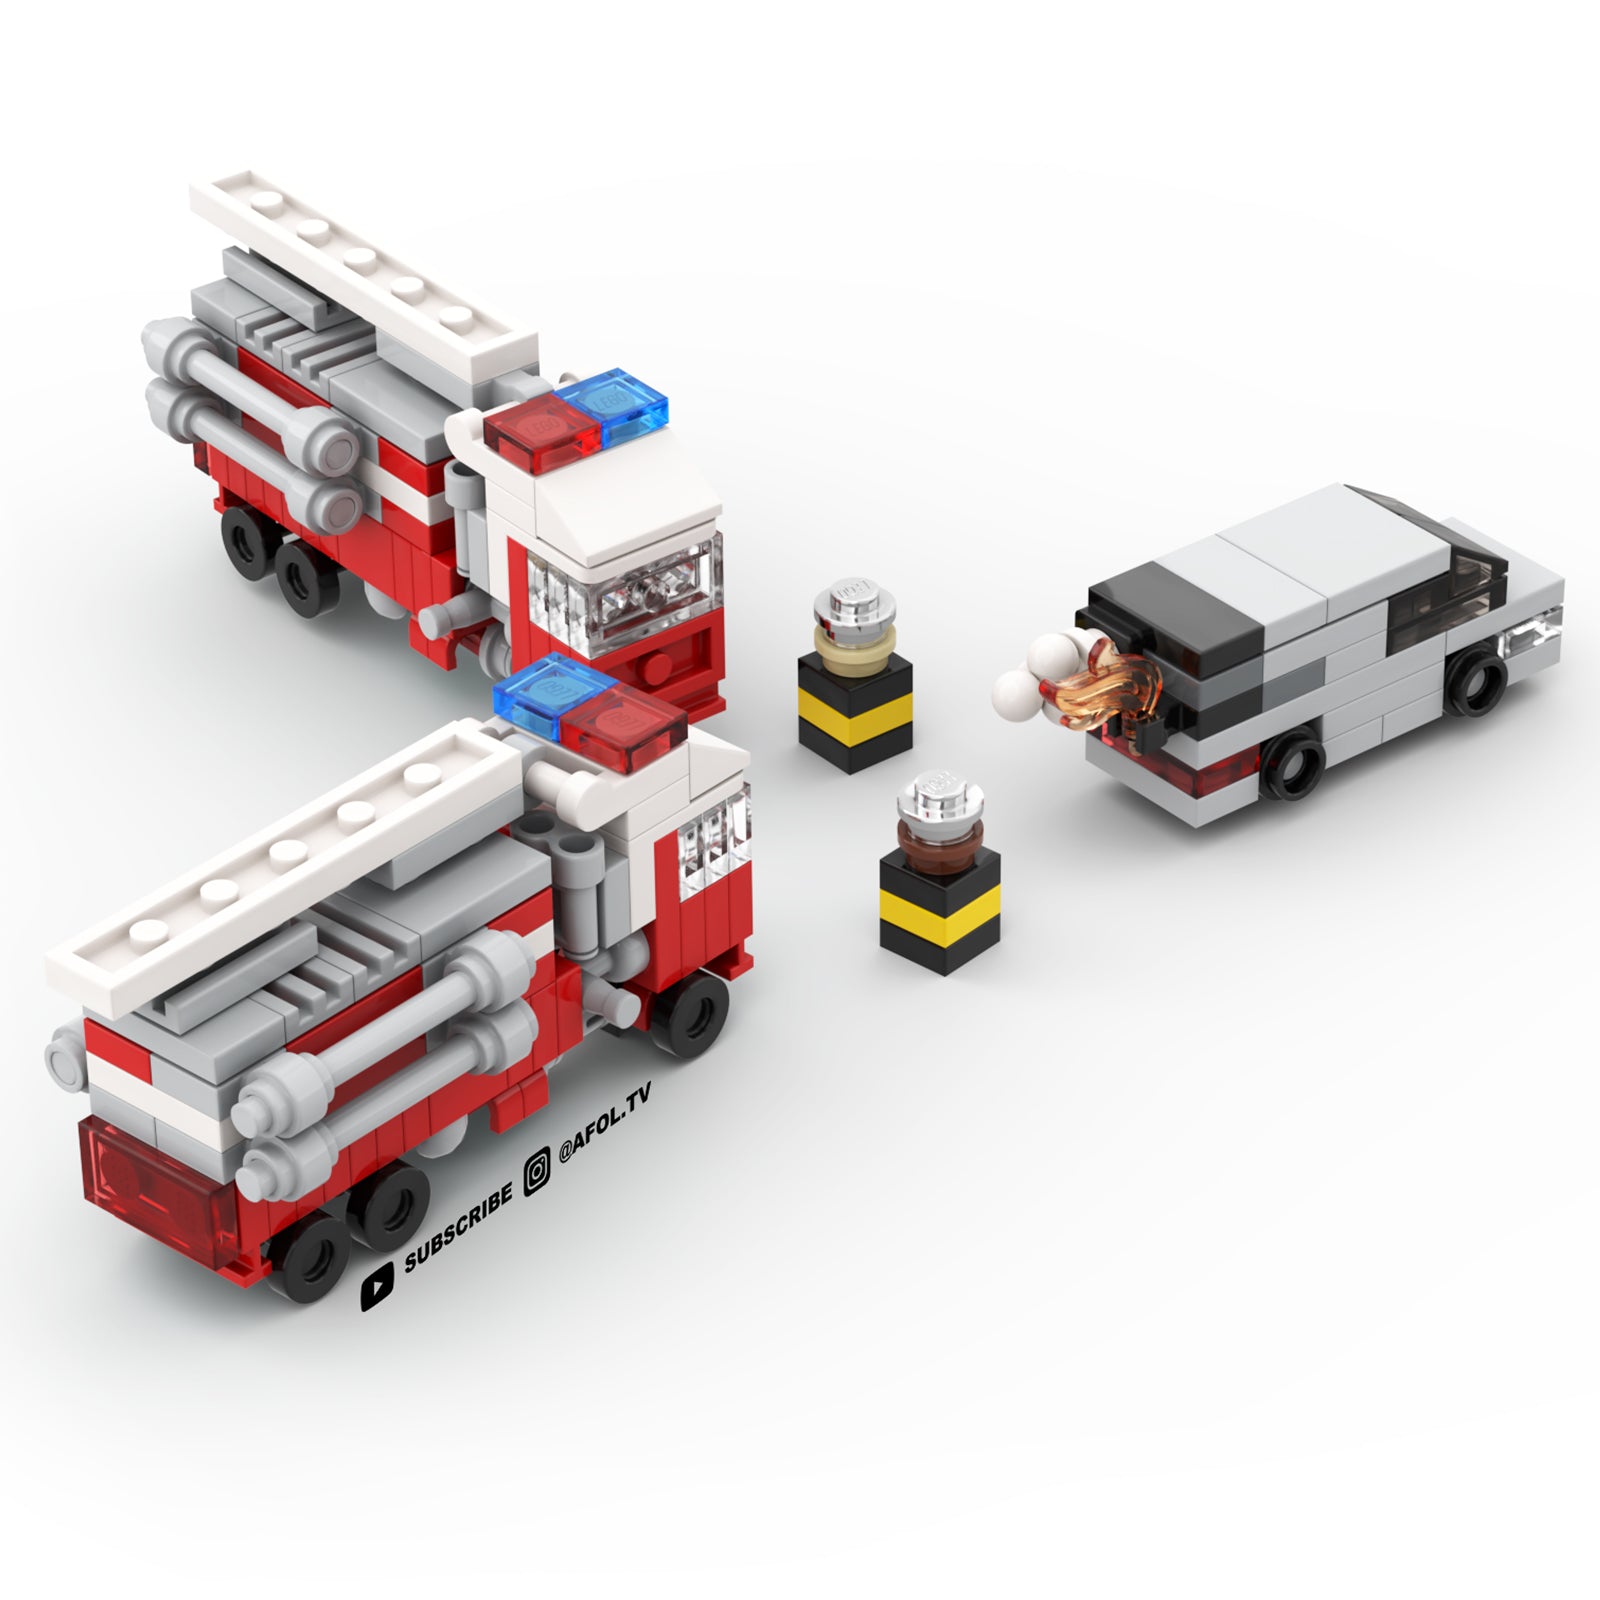 Fire Truck Instructions – AFOL TV